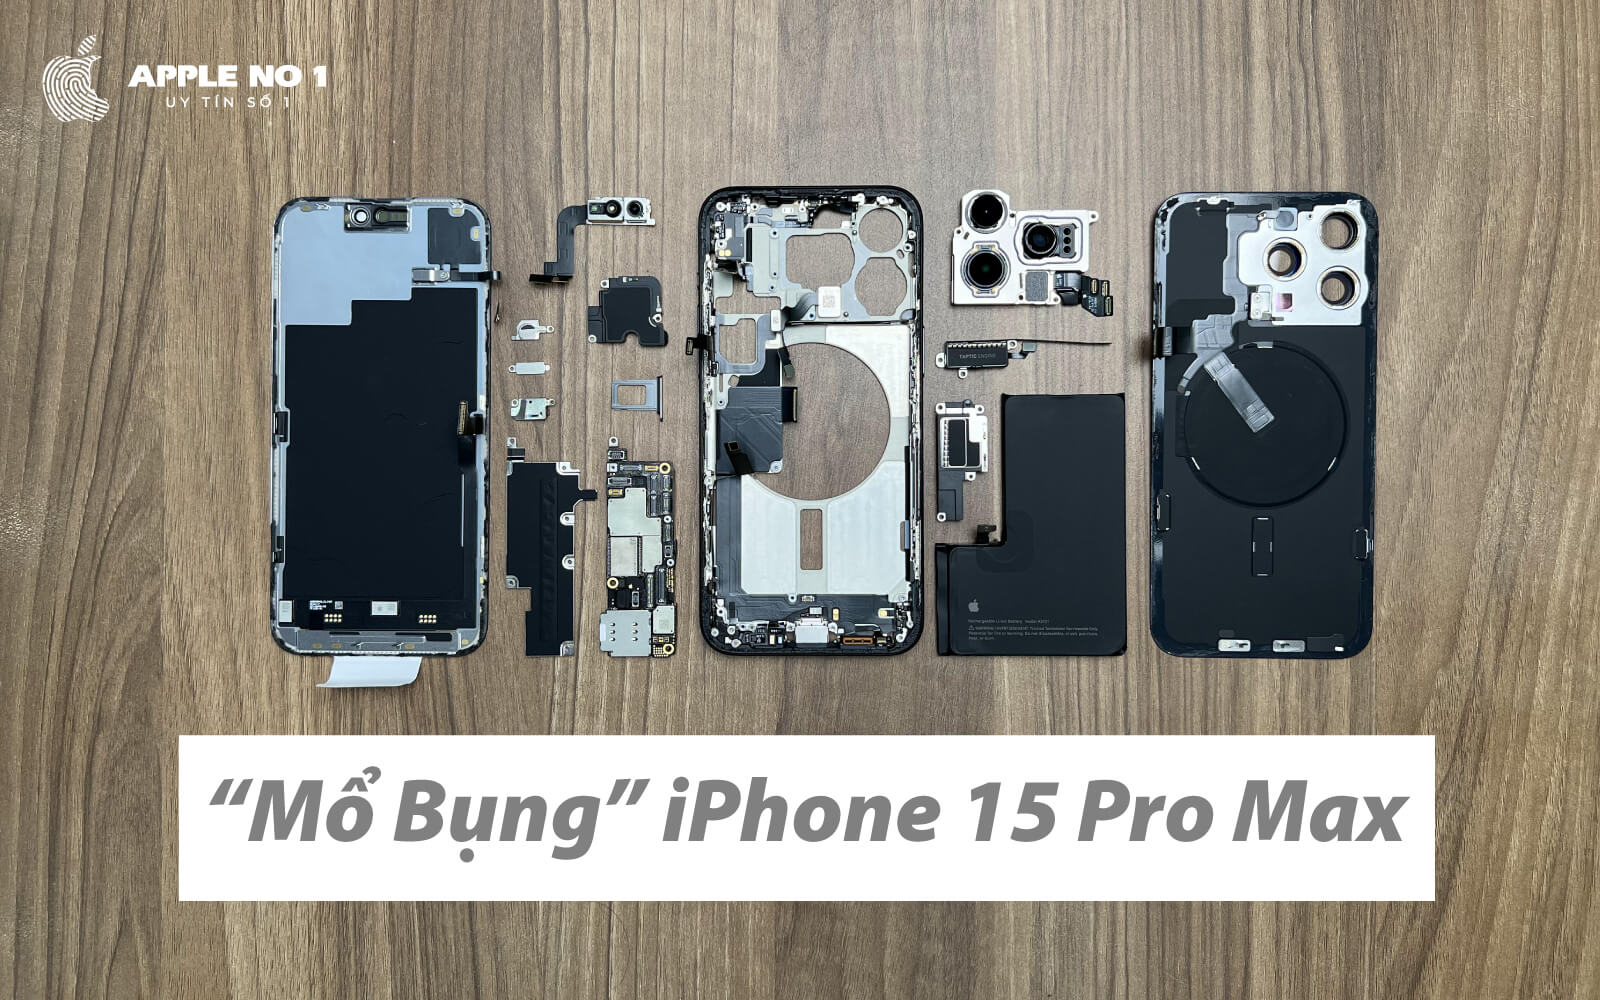 "Mổ bụng" iPhone 15 Pro Max đầu tiên Việt Nam tại Apple No.1